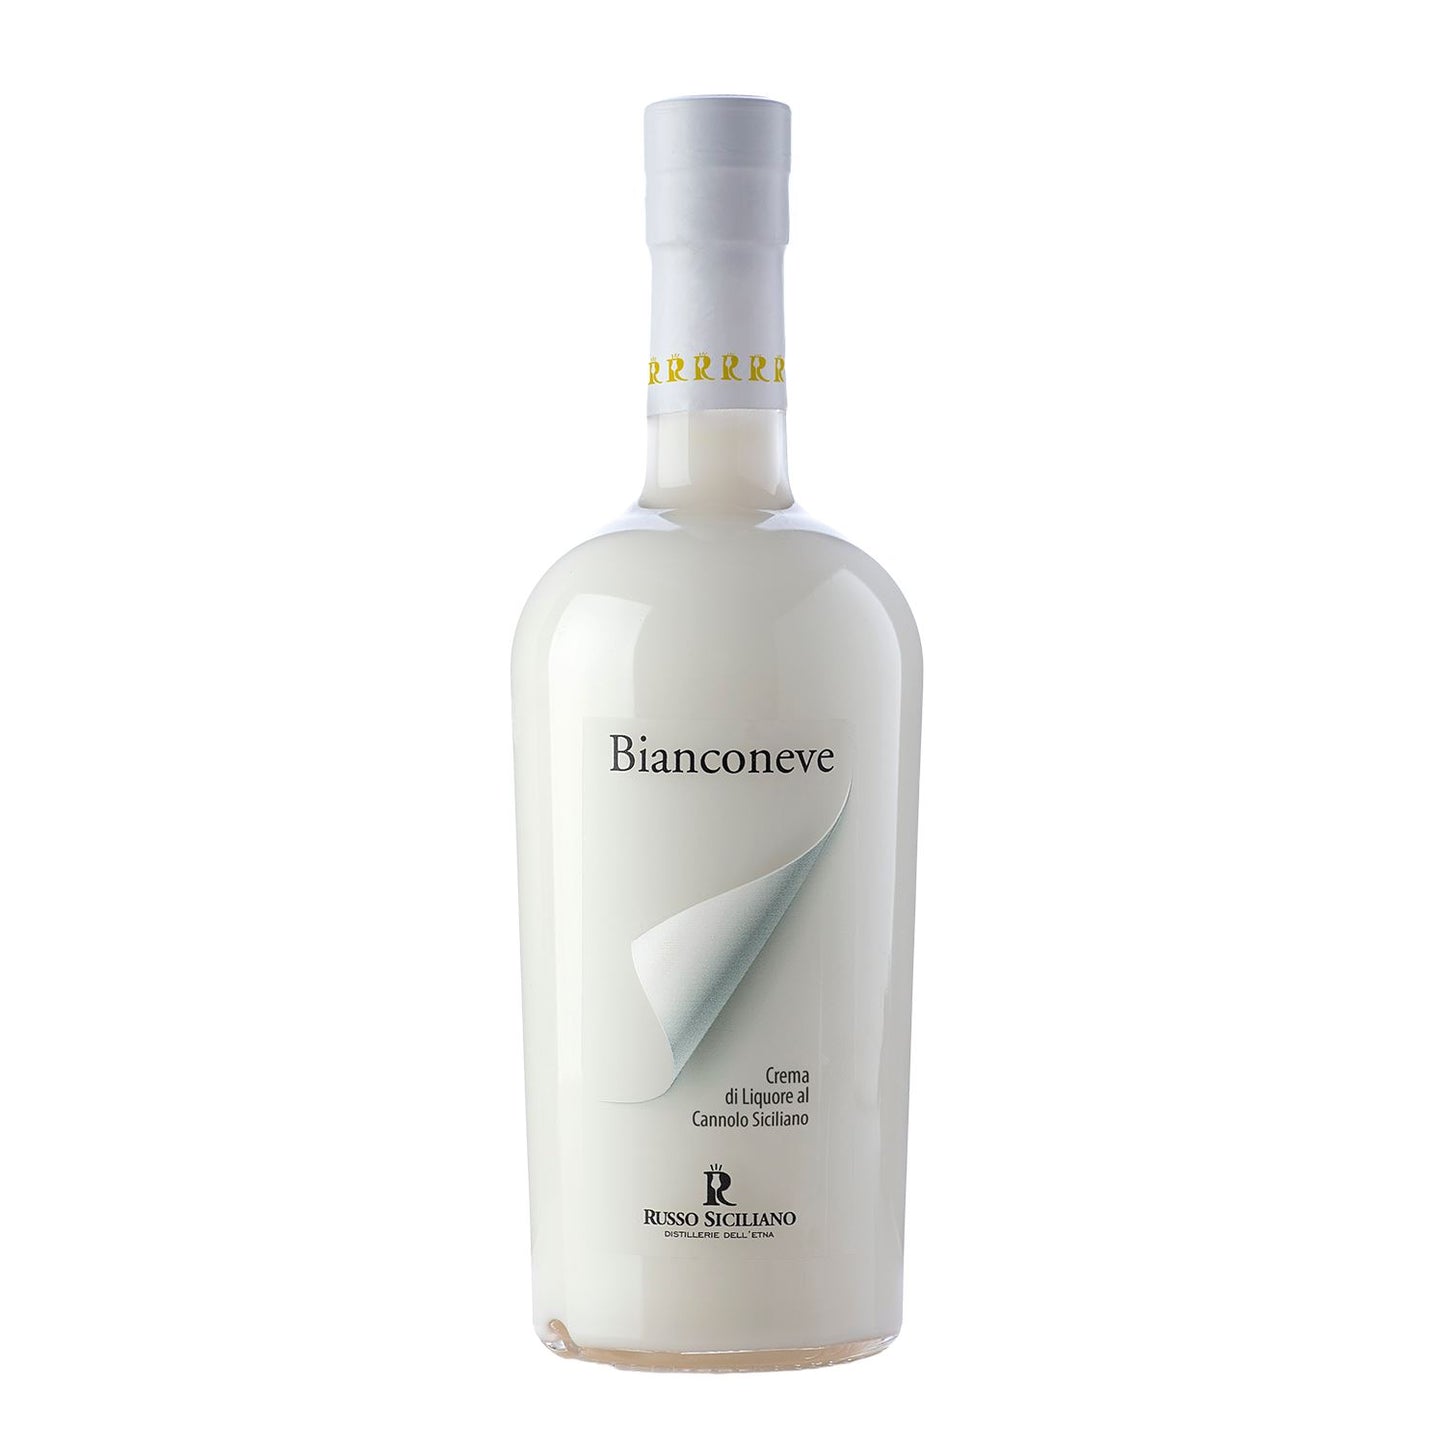 Bianconeve – Crema di liquore al cannolo siciliano, 50 Cl Vini e liquori Distillerie dell’Etna F.lli Russo 